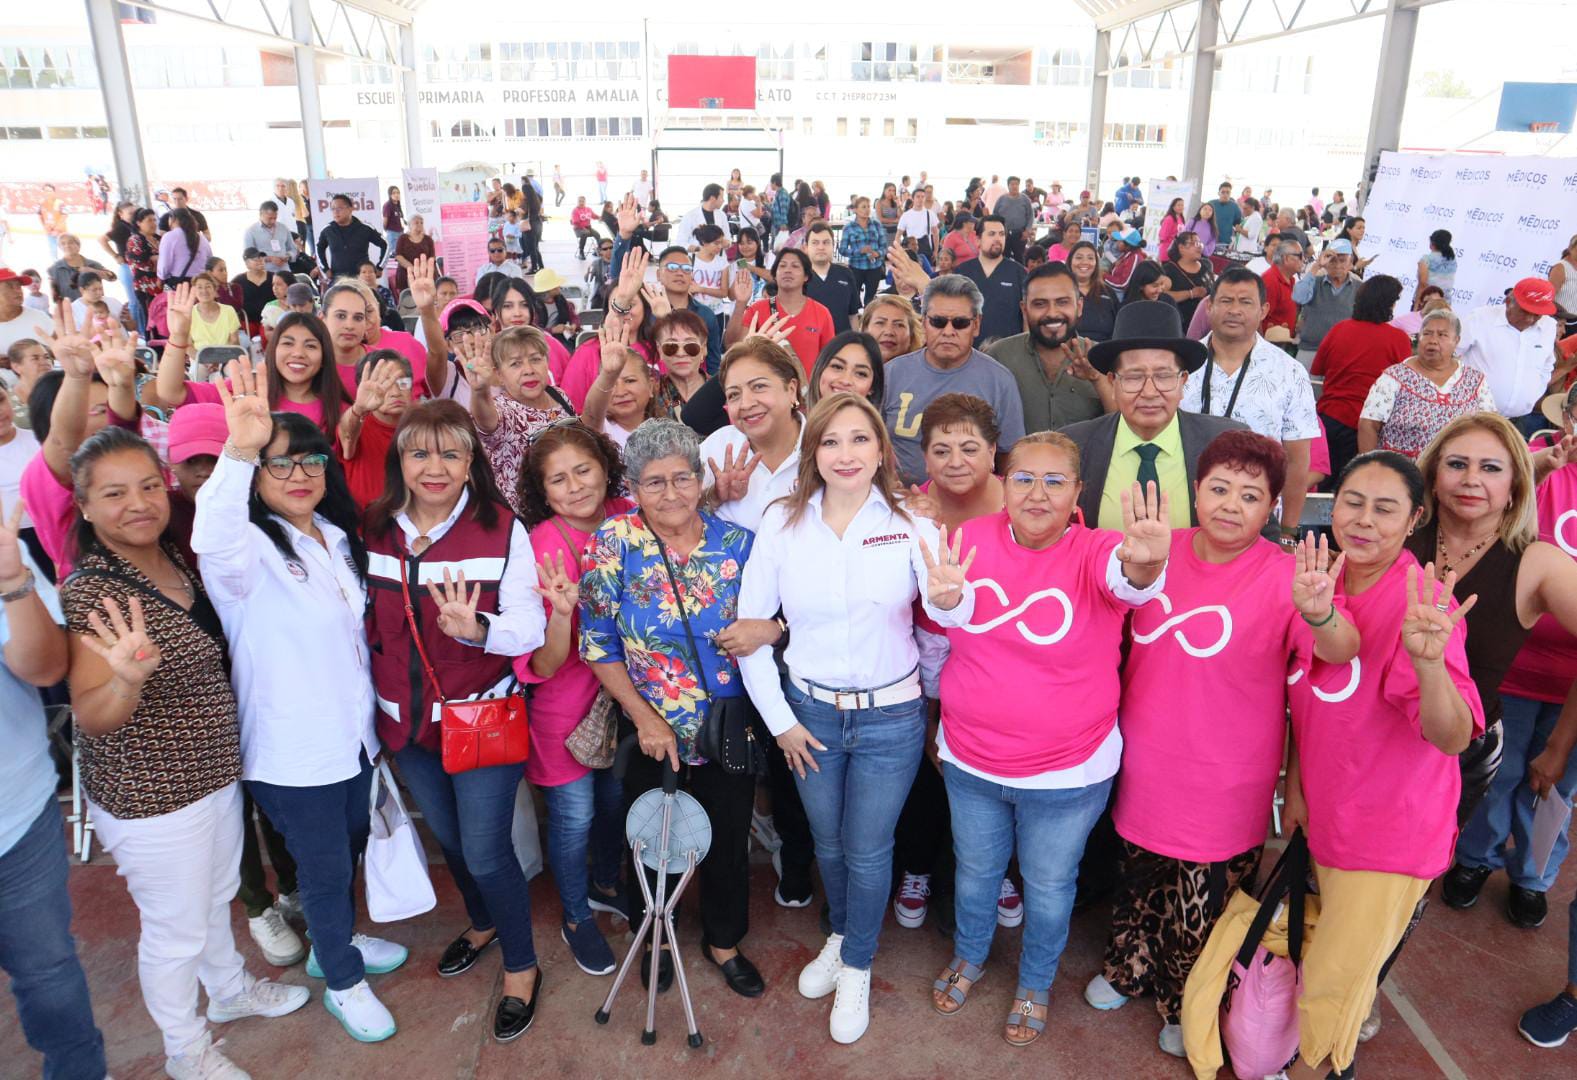 Promover valores familiares en Puebla: prioridad de Ceci Arellano y Armenta